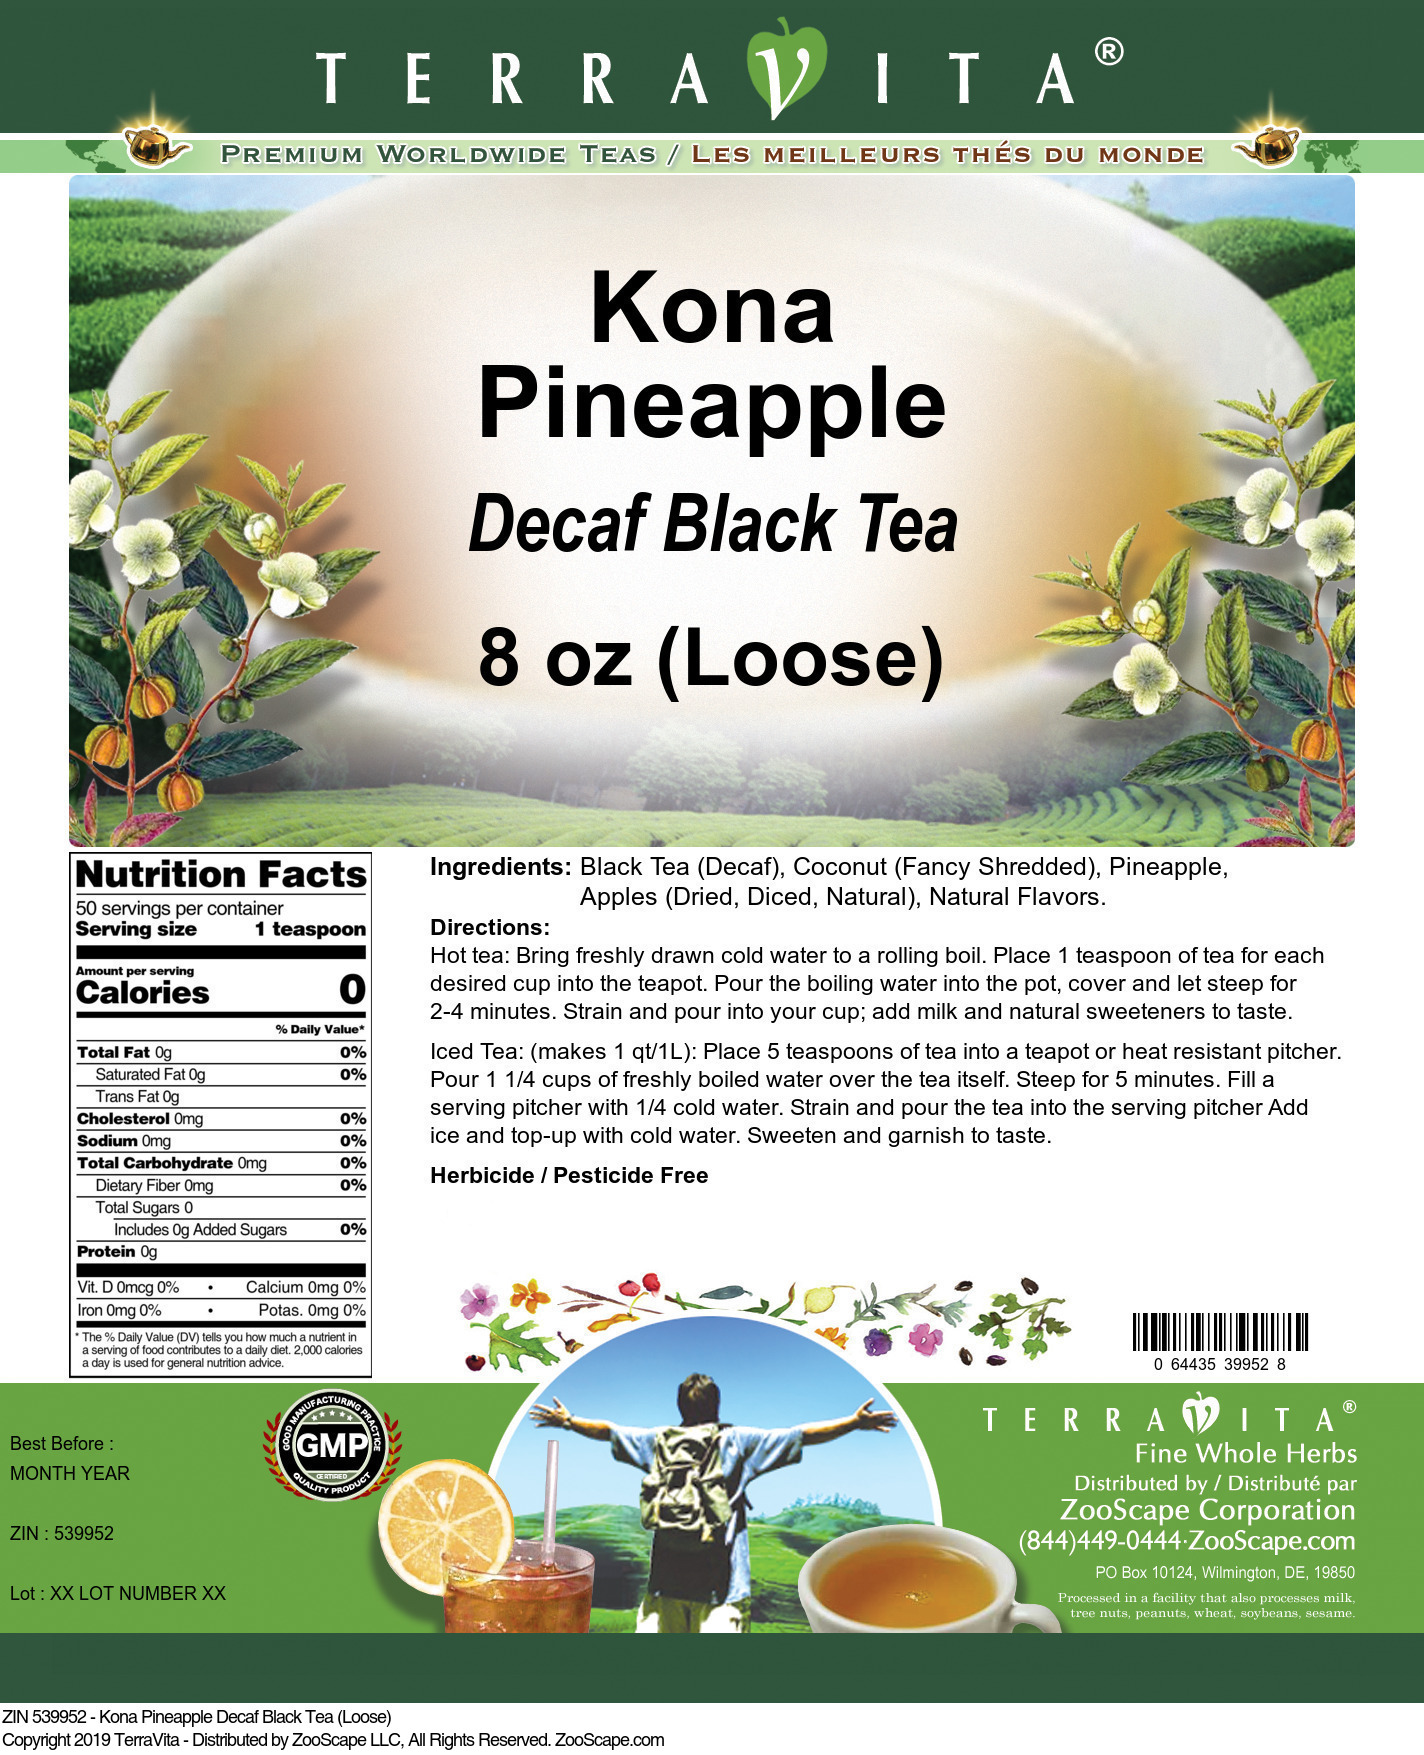 Kona Pineapple Decaf Black Tea (Loose) - Label